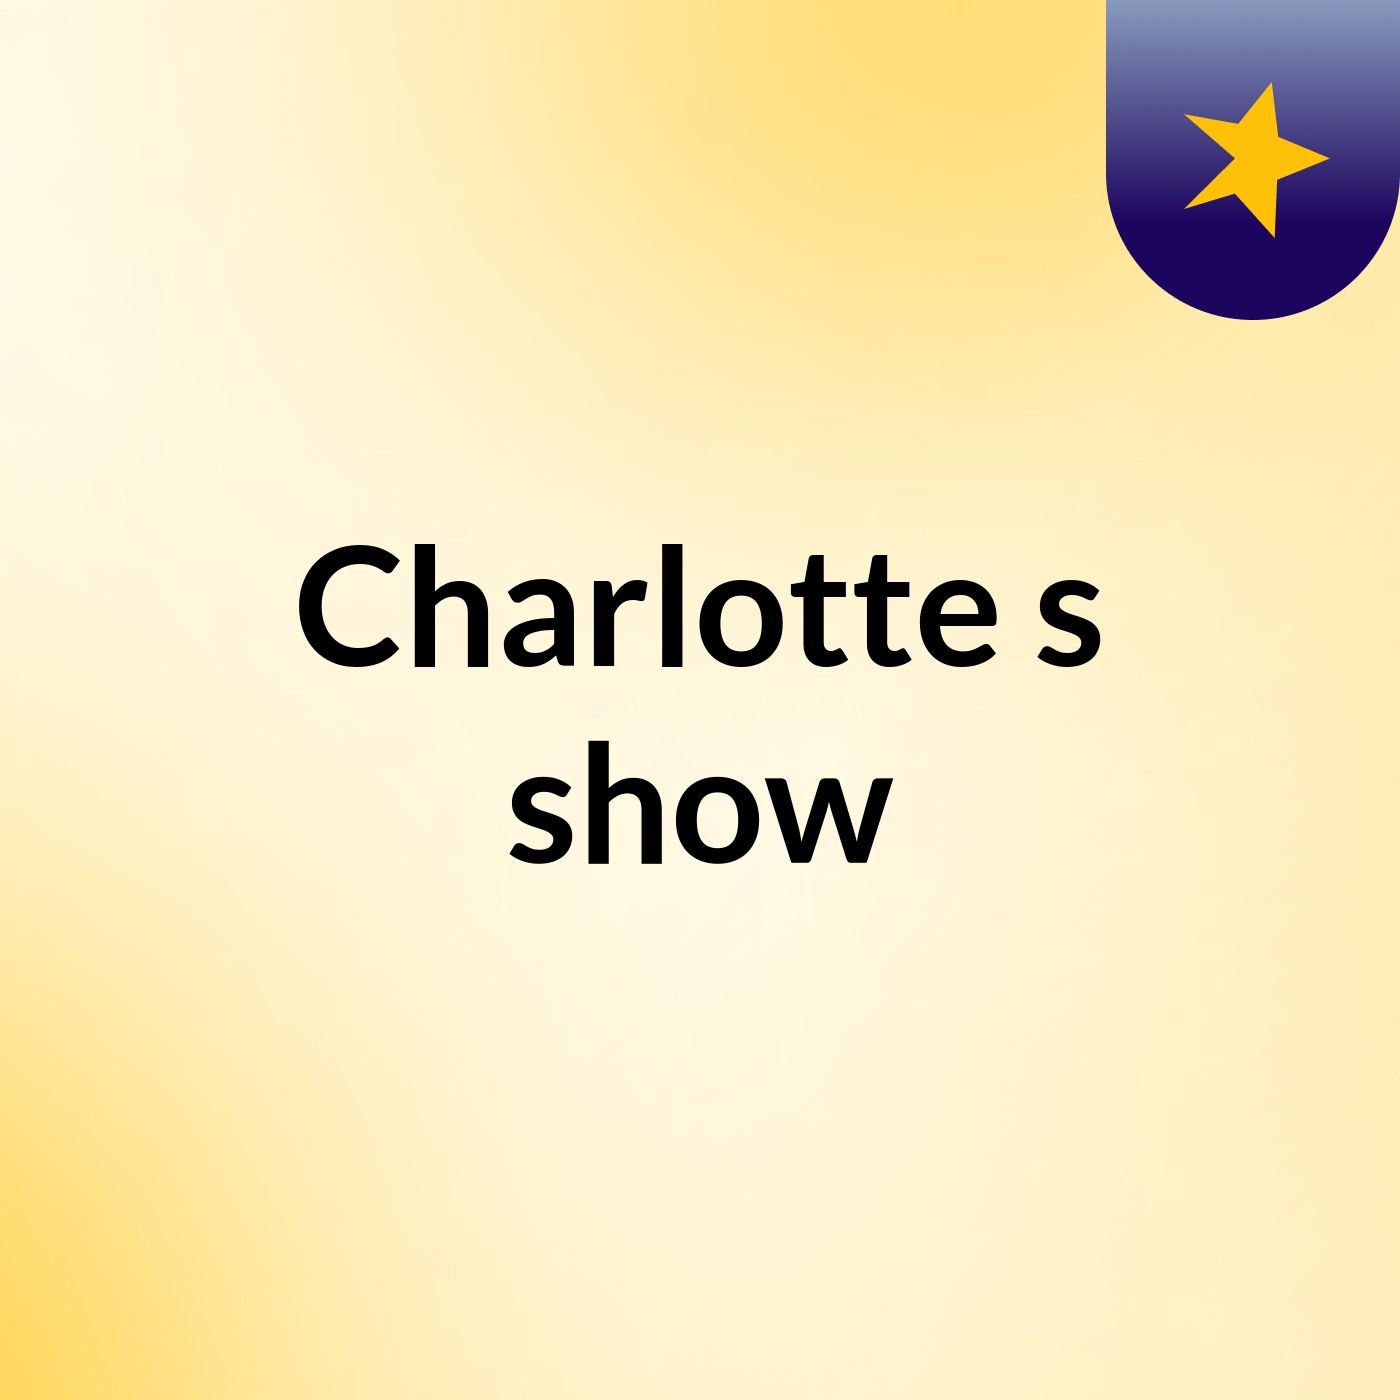 Charlotte's show